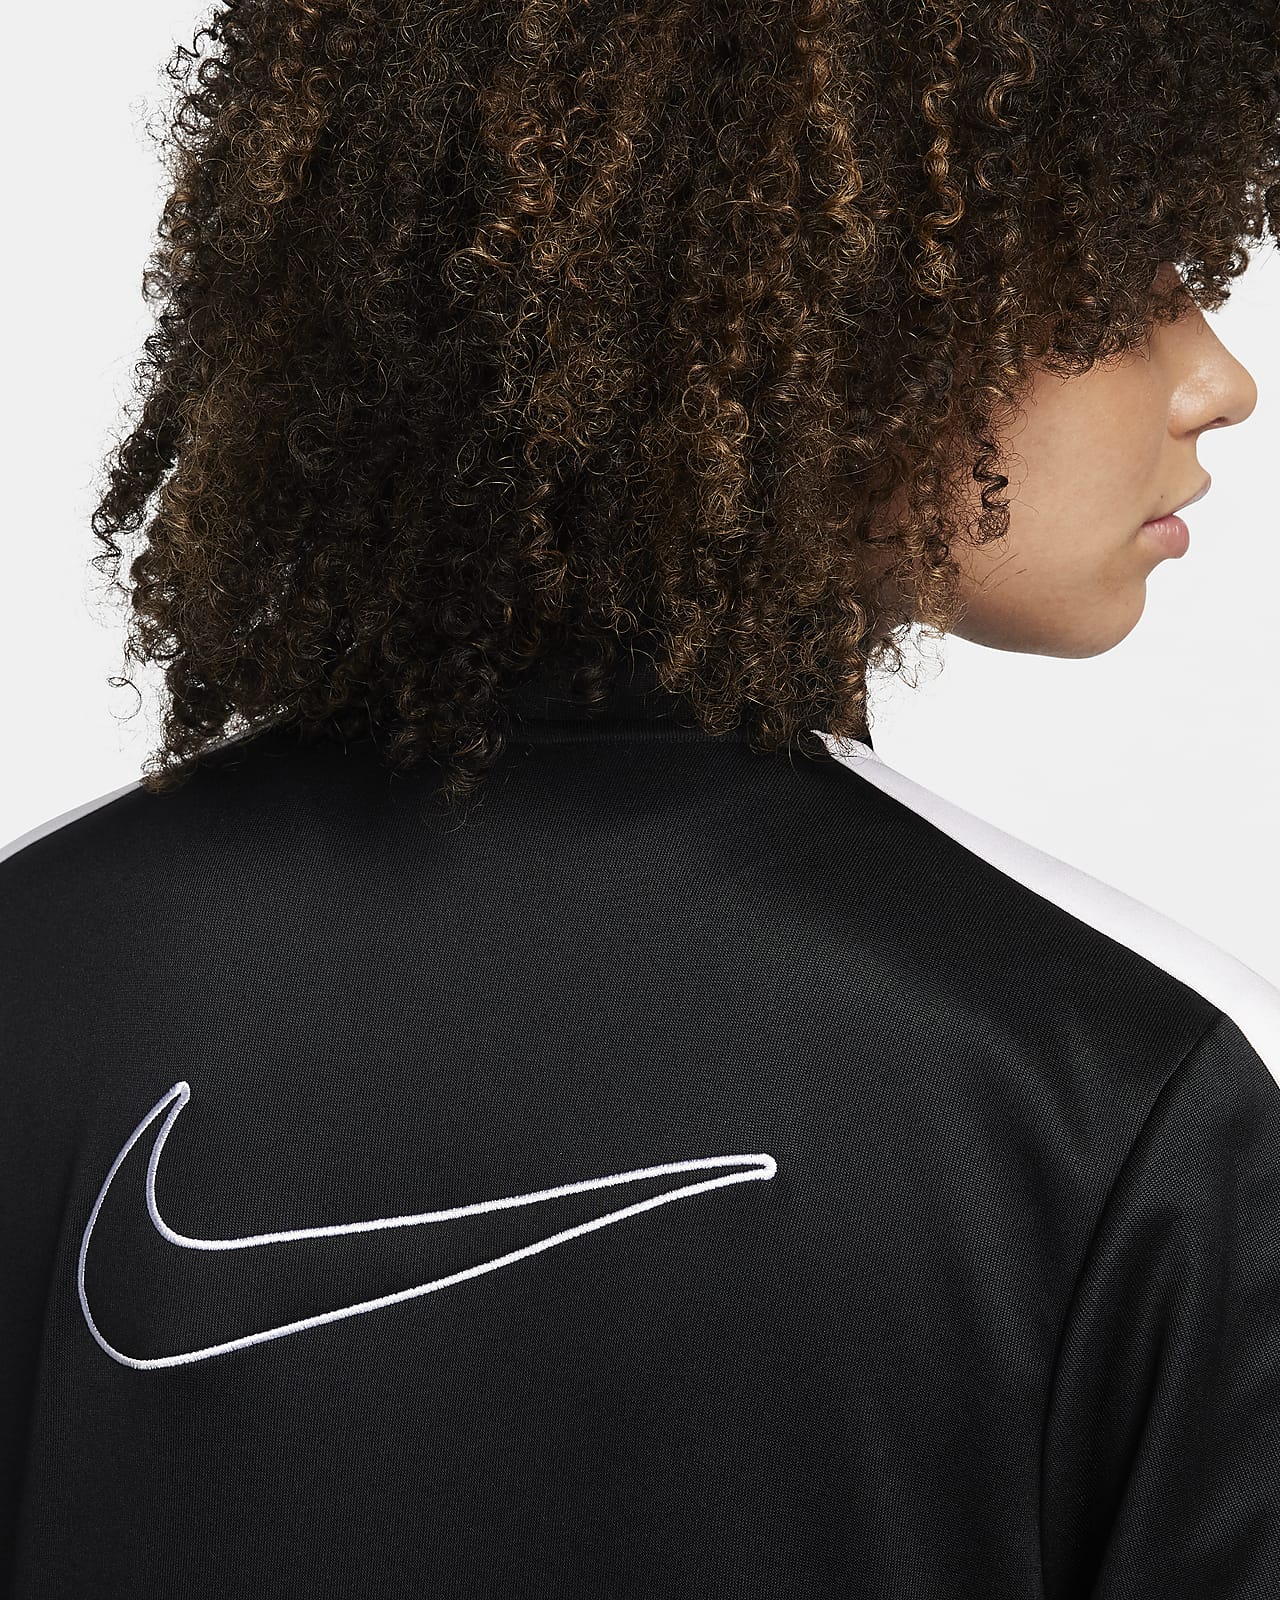 【ナイキ公式】スポーツウェア ウィメンズジャケット ブラック ウィメンズ M Nike Sportswear Women's Jacket